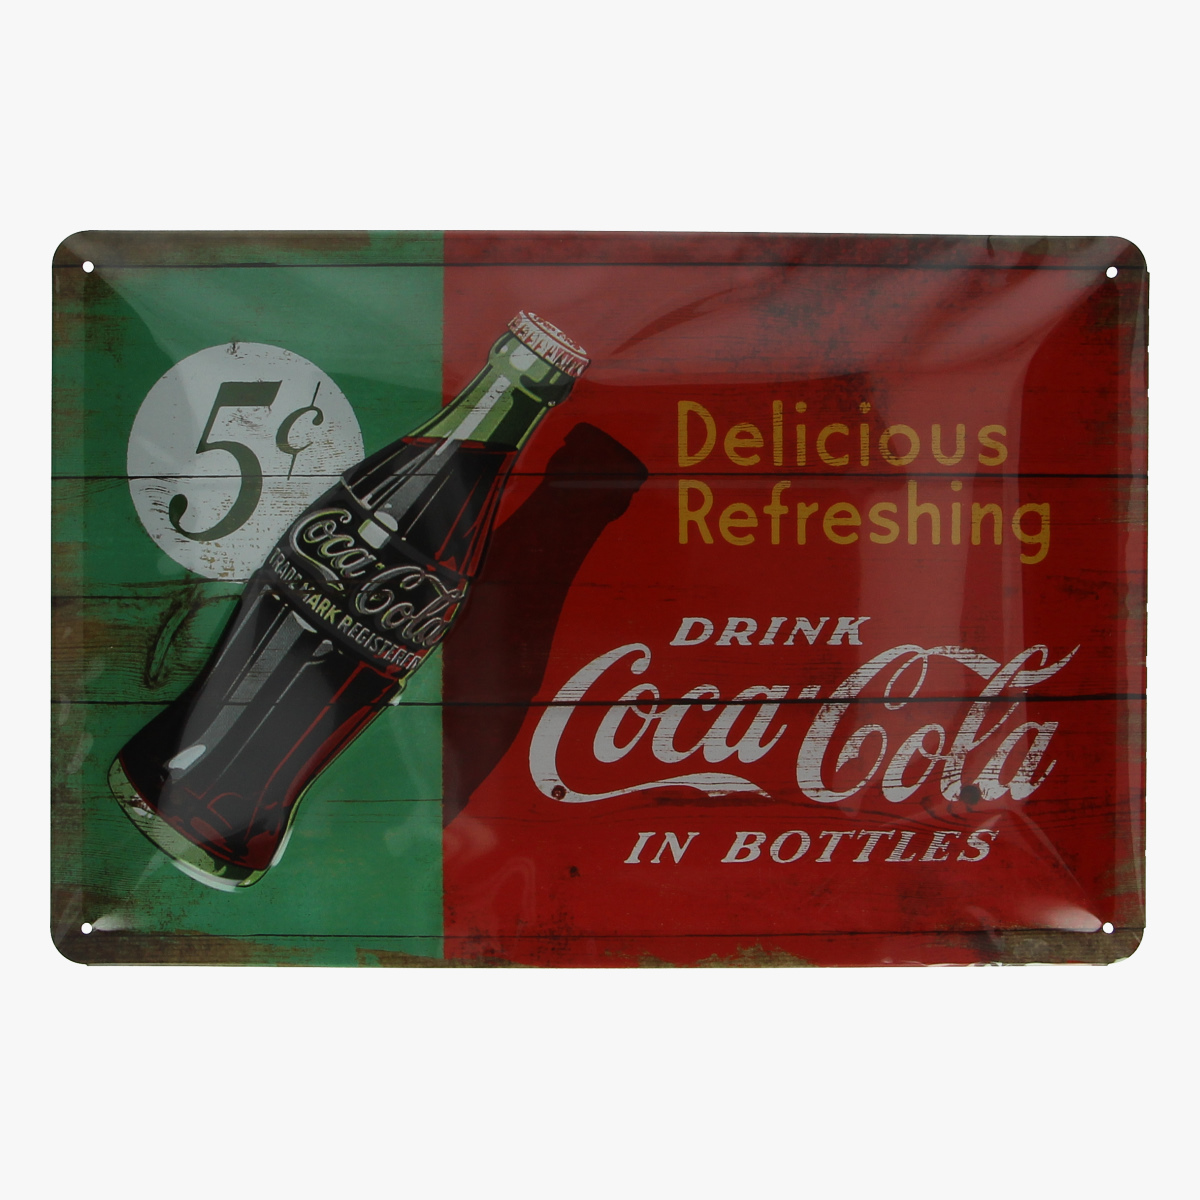 Afbeeldingen van blikken bordje coca cola geseald repro